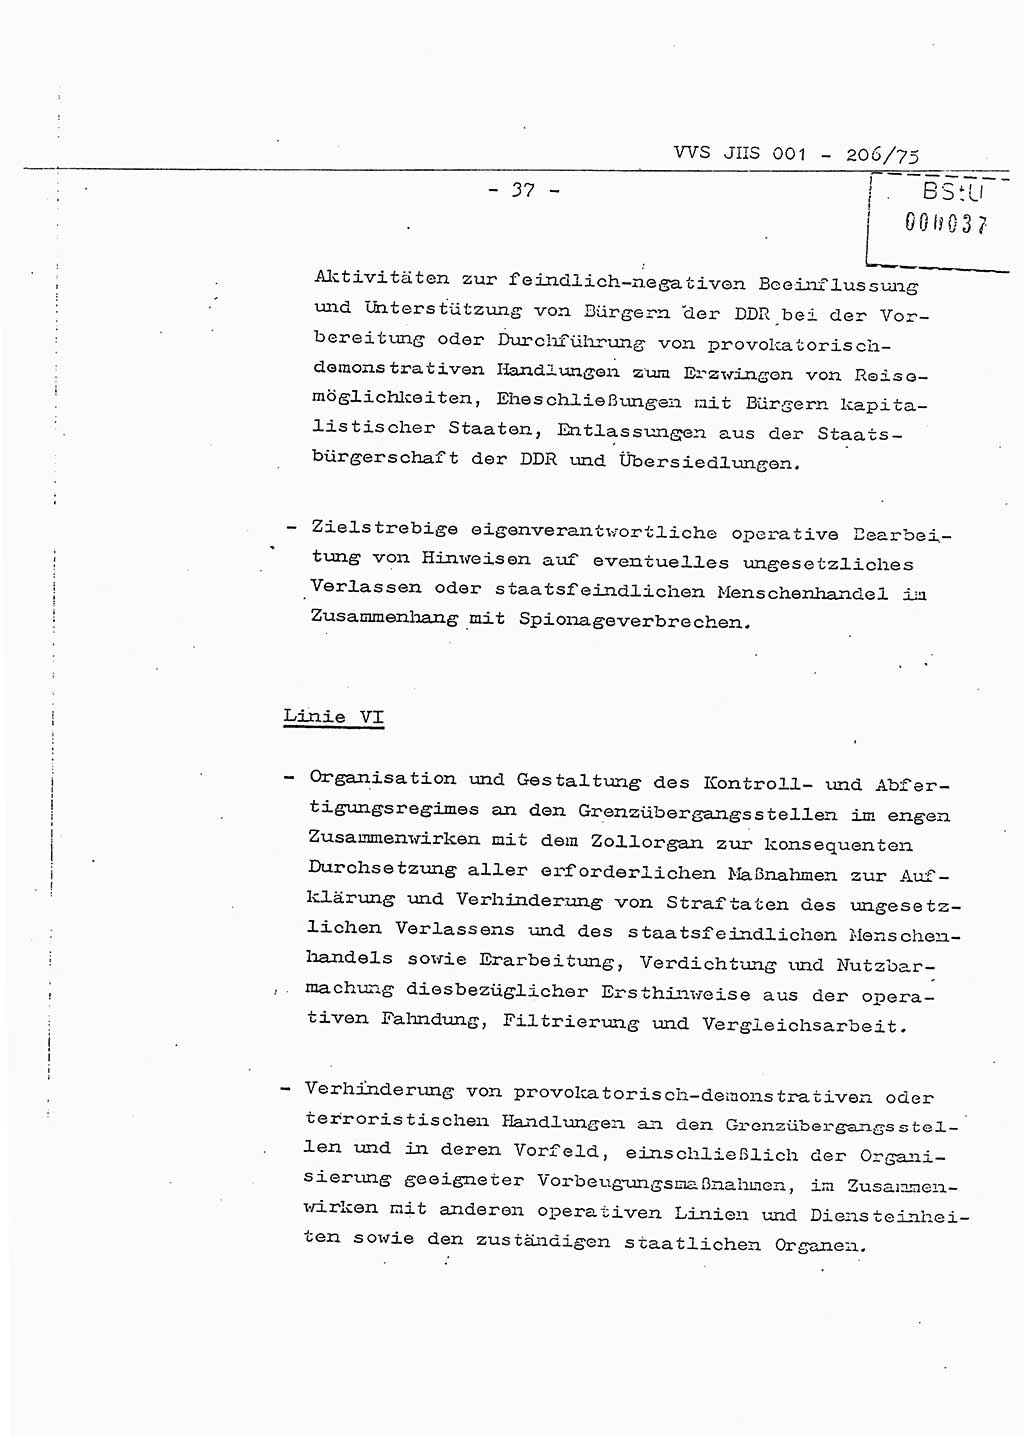 Dissertation Generalmajor Manfred Hummitzsch (Leiter der BV Leipzig), Generalmajor Heinz Fiedler (HA Ⅵ), Oberst Rolf Fister (HA Ⅸ), Ministerium für Staatssicherheit (MfS) [Deutsche Demokratische Republik (DDR)], Juristische Hochschule (JHS), Vertrauliche Verschlußsache (VVS) 001-206/75, Potsdam 1975, Seite 37 (Diss. MfS DDR JHS VVS 001-206/75 1975, S. 37)